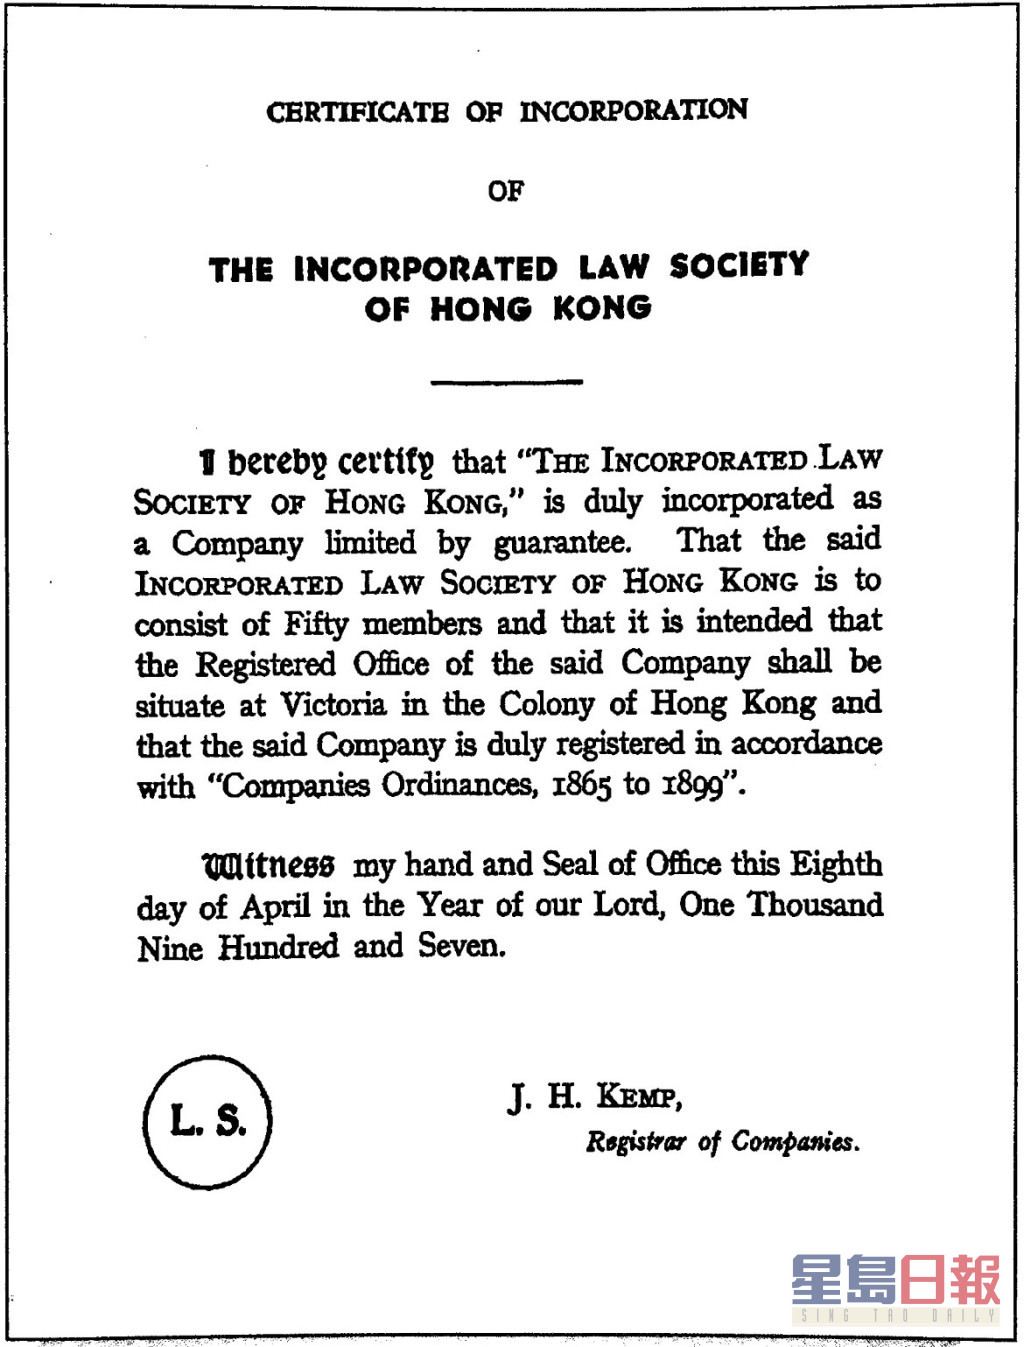 公司註冊處處長於1907年4月8日根據《公司條例》簽發予律師會的「公司註冊證明書」。